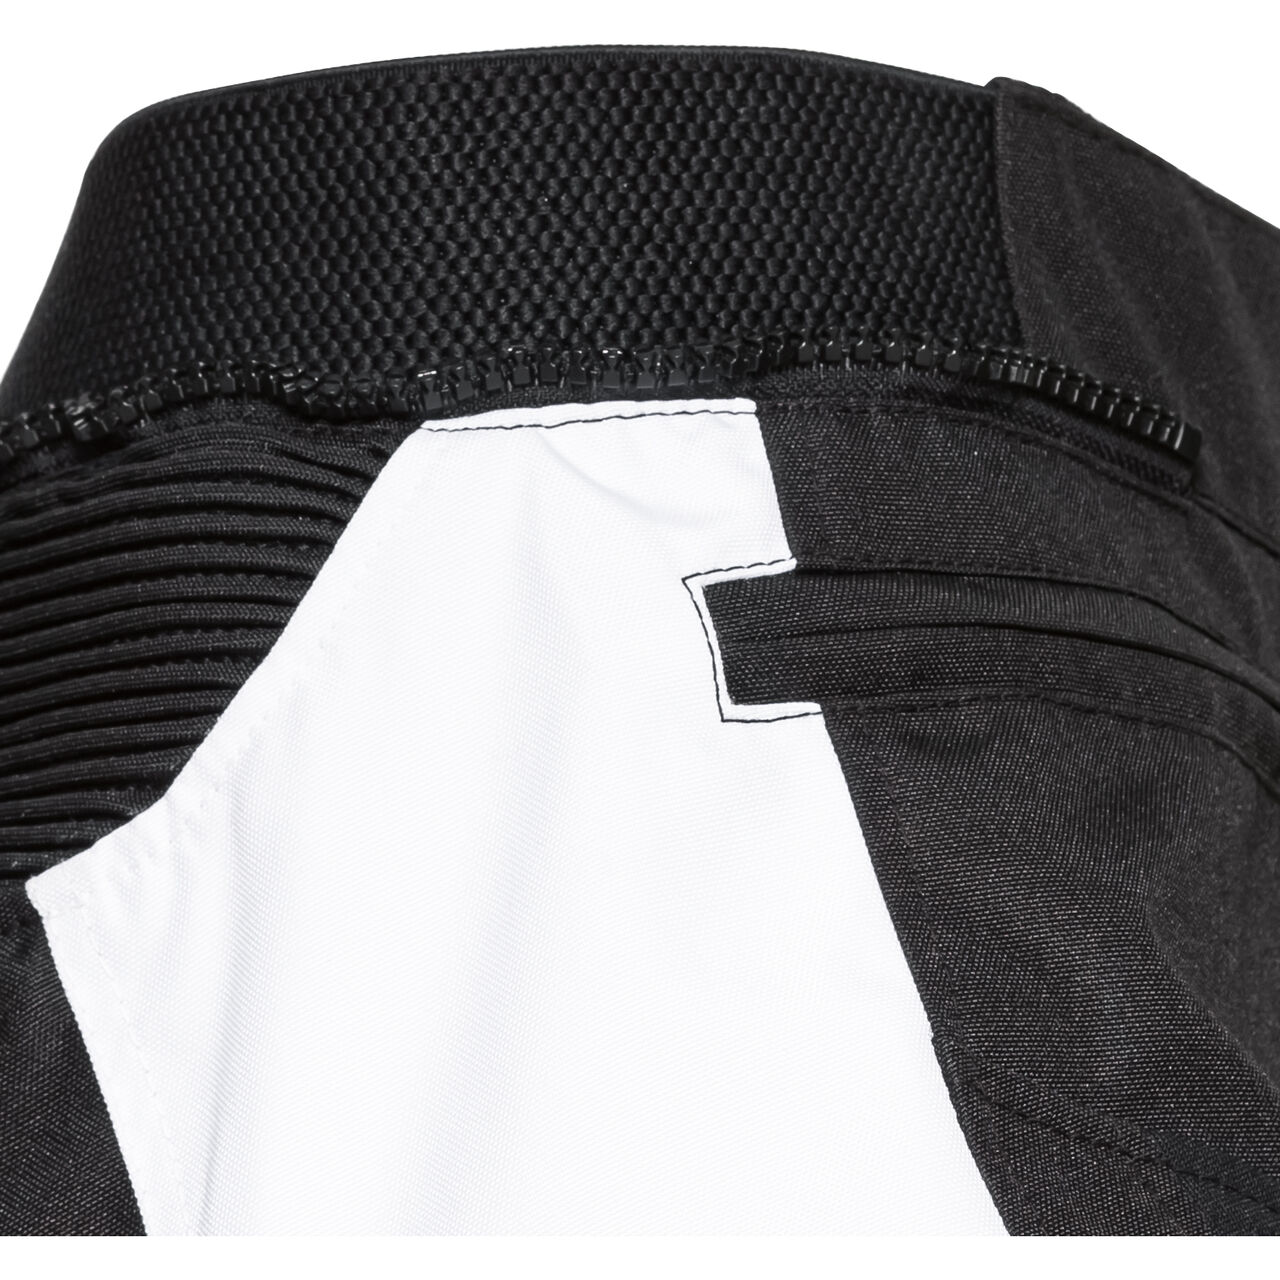 Traction Damen Textilhose schwarz/weiß S